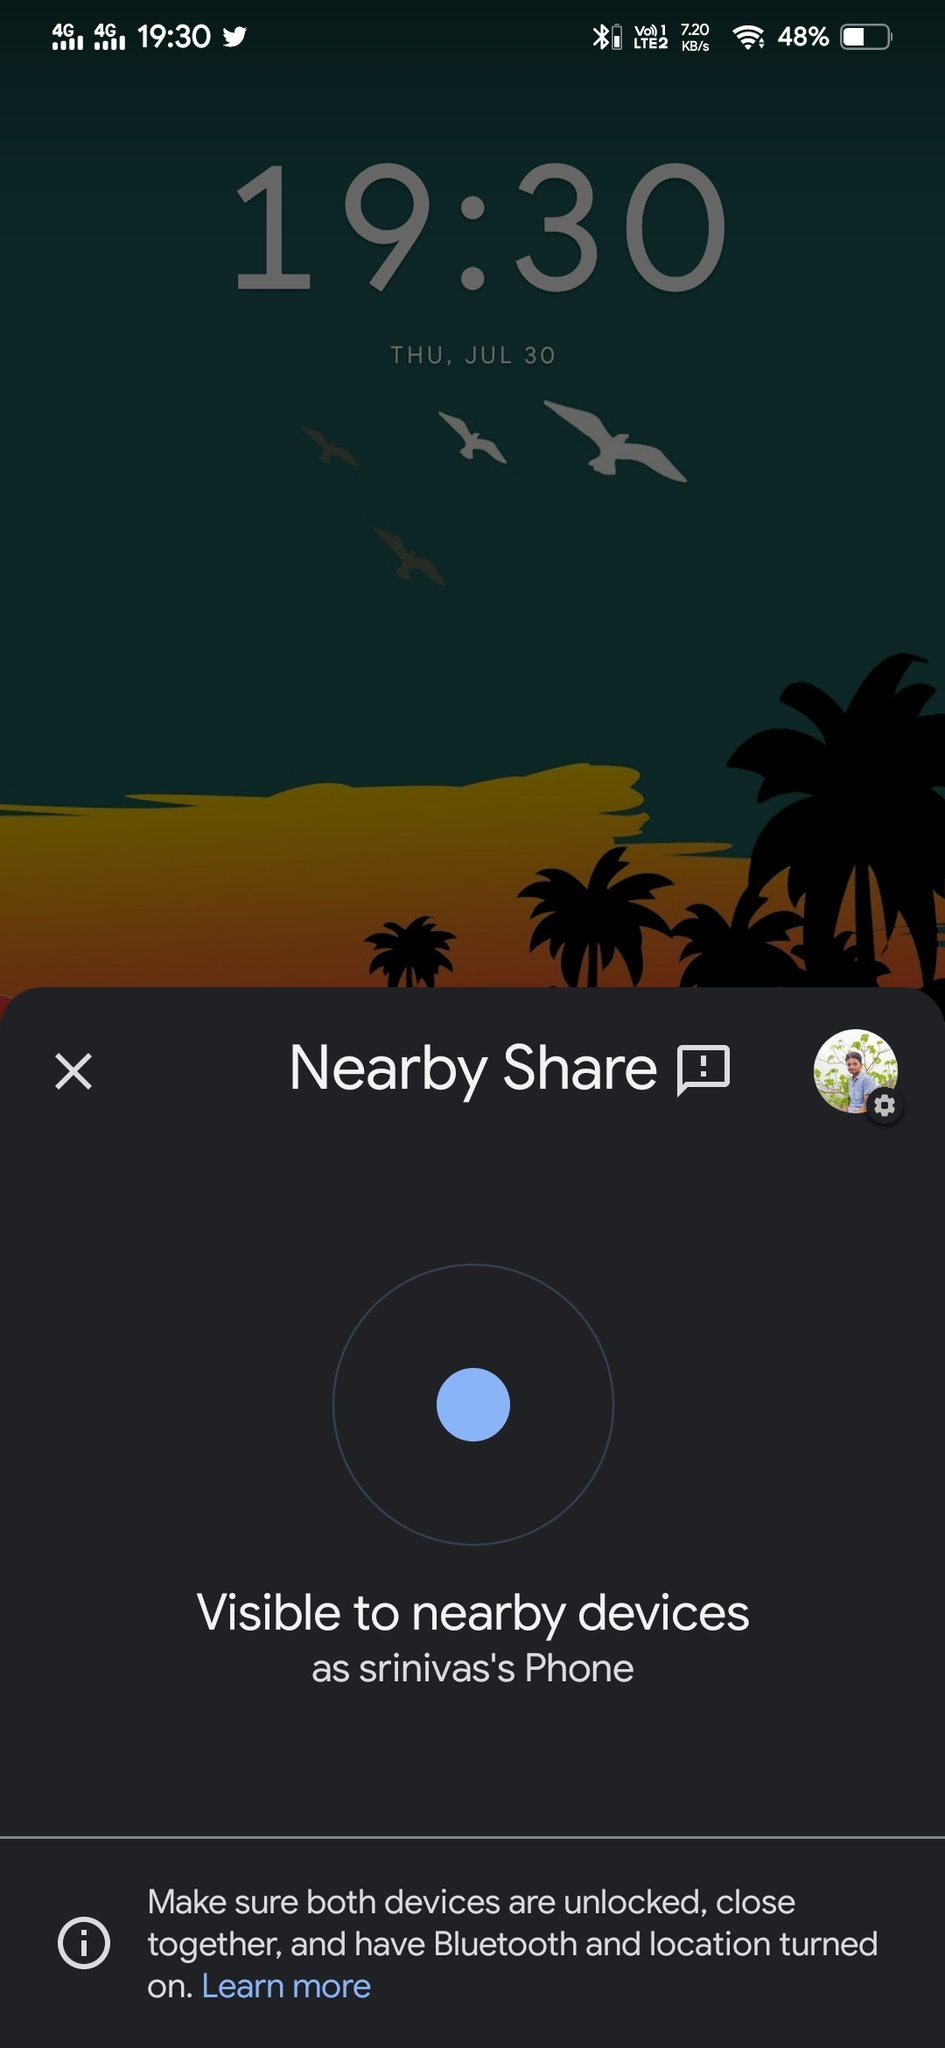 Le partage à proximité arrive dans Chrome sur Android et sur le bureau